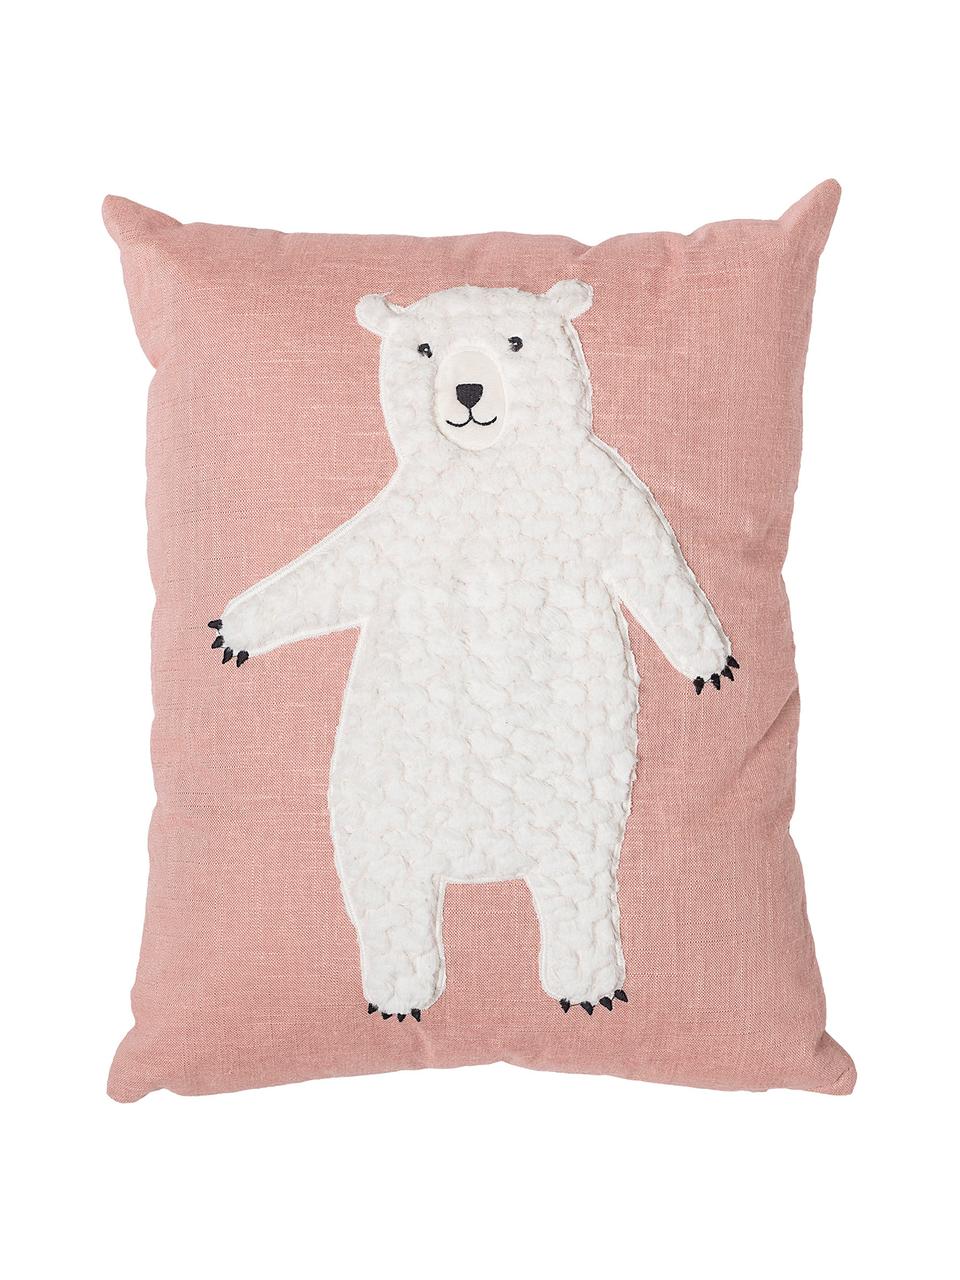 Kissen Bear, mit Inlett, Bezug: 70% Baumwolle, 30% Polyes, Rosa, Weiß, 40 x 50 cm